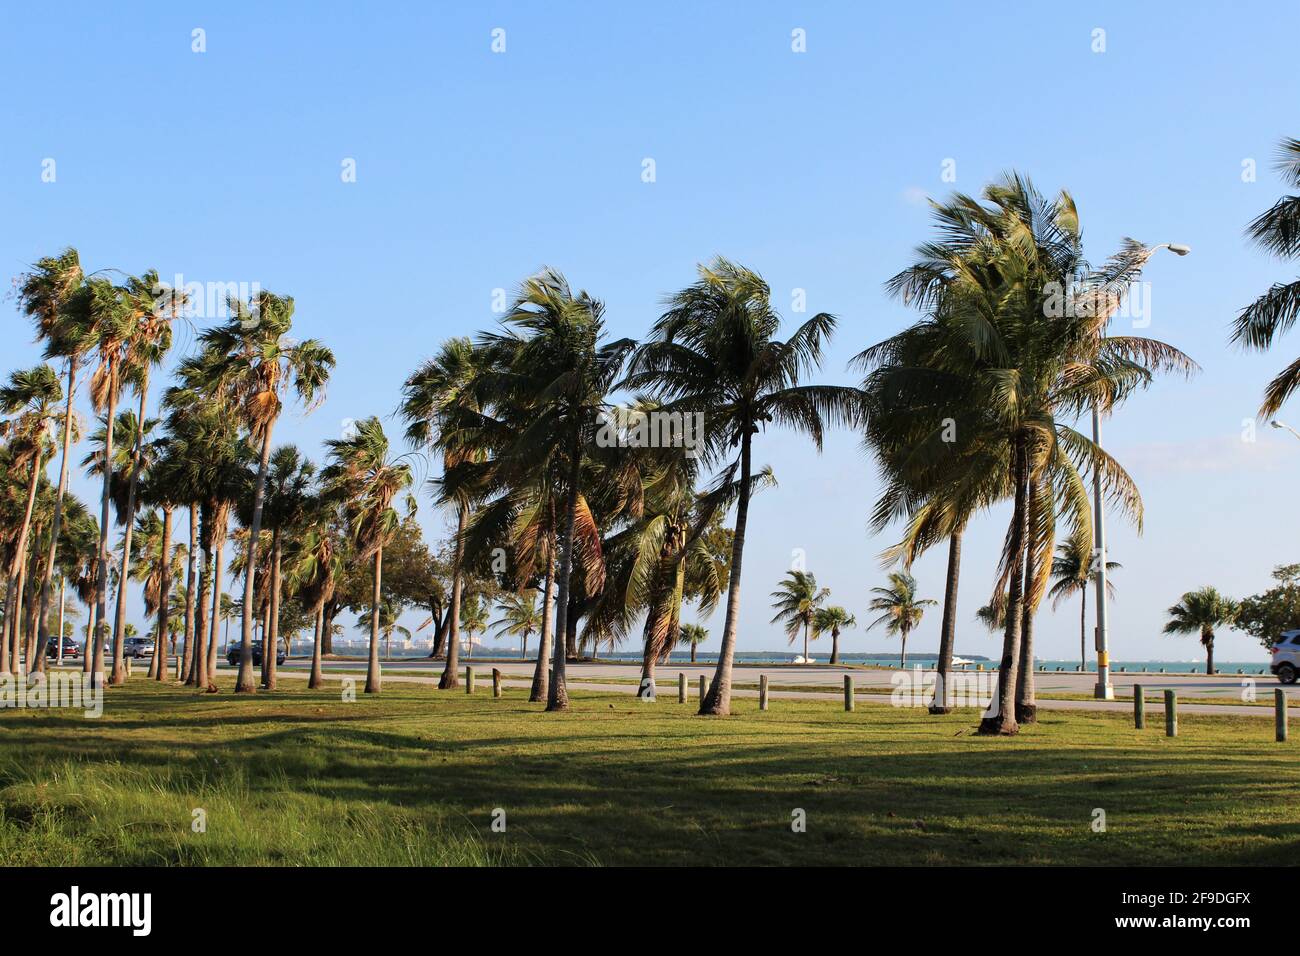 Belle journée ensoleillée à Key Biscayne, Floride. Grands palmiers avec fond d'océan et bateaux. Banque D'Images